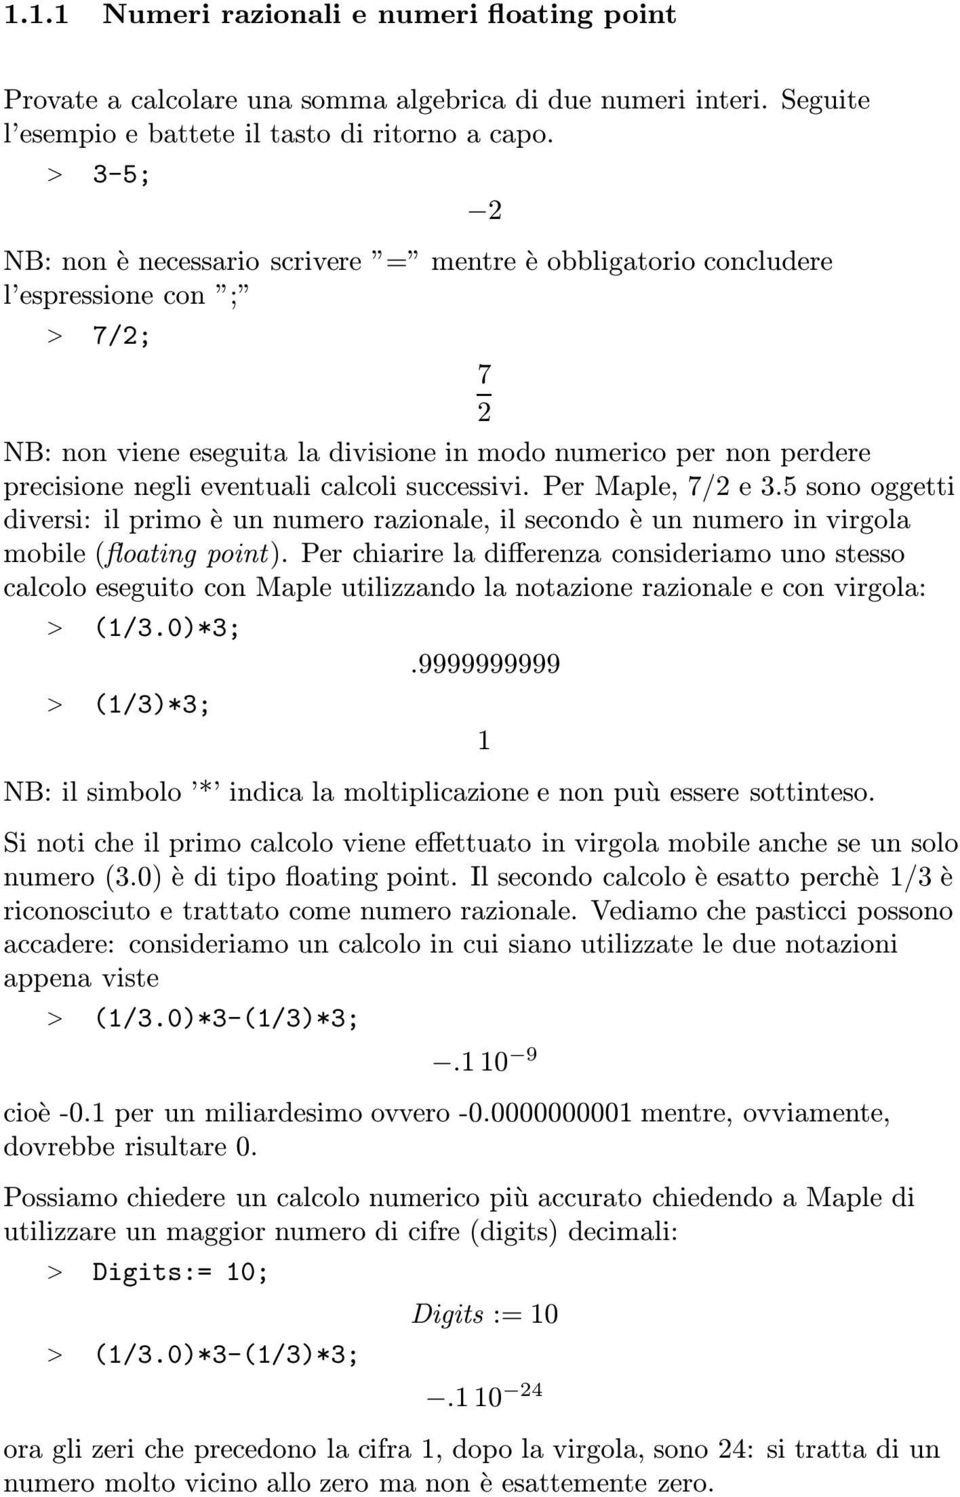 eventuali calcoli successivi. Per Maple, 7/2 e 3.5 sono oggetti diversi: il primo è un numero razionale, il secondo è un numero in virgola mobile (floating point).